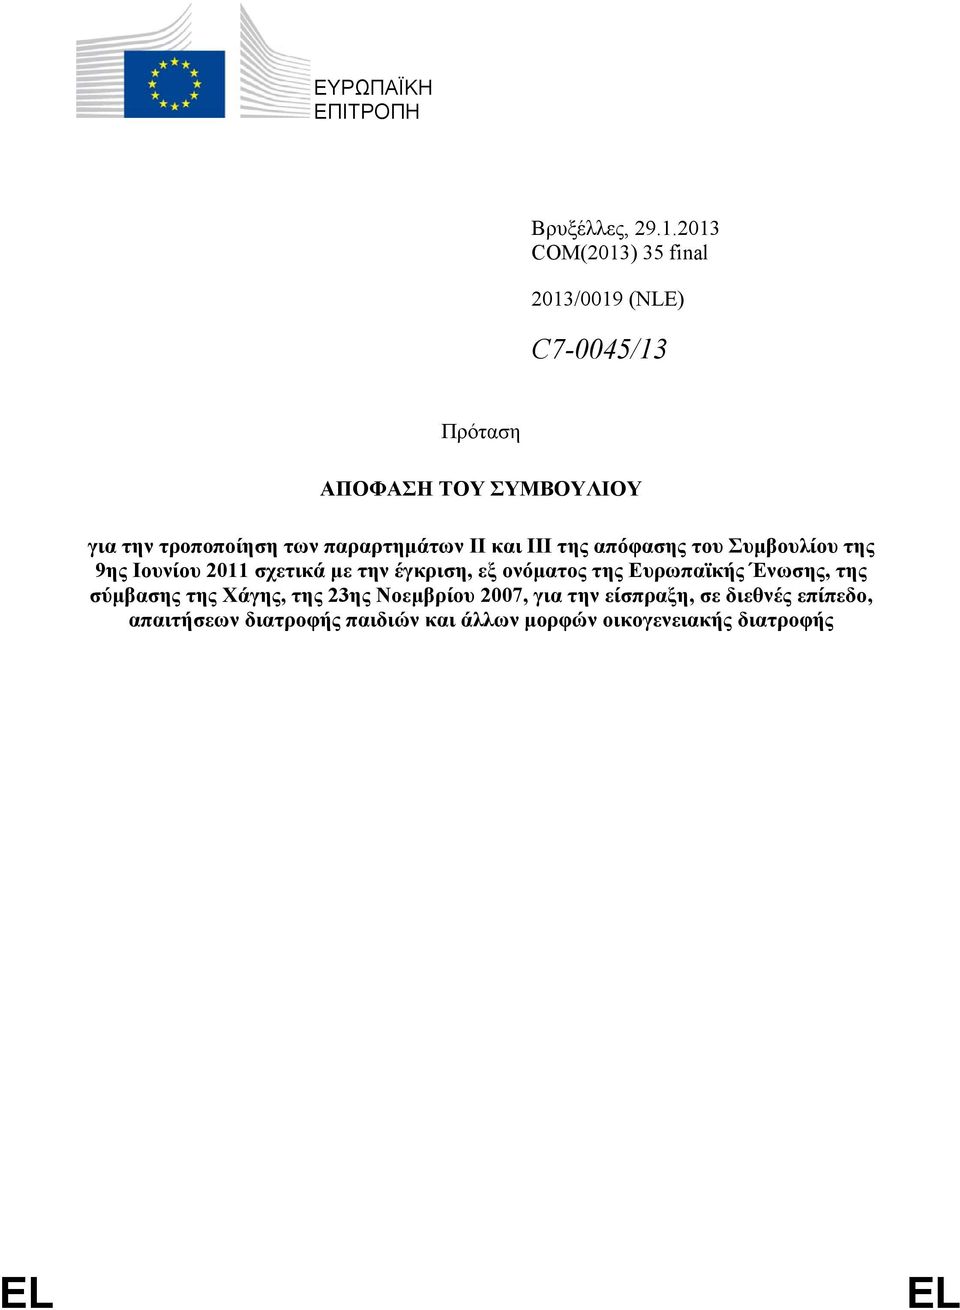 παραρτημάτων ΙΙ και ΙΙΙ της απόφασης του Συμβουλίου της 9ης Ιουνίου 2011 σχετικά με την έγκριση, εξ ονόματος